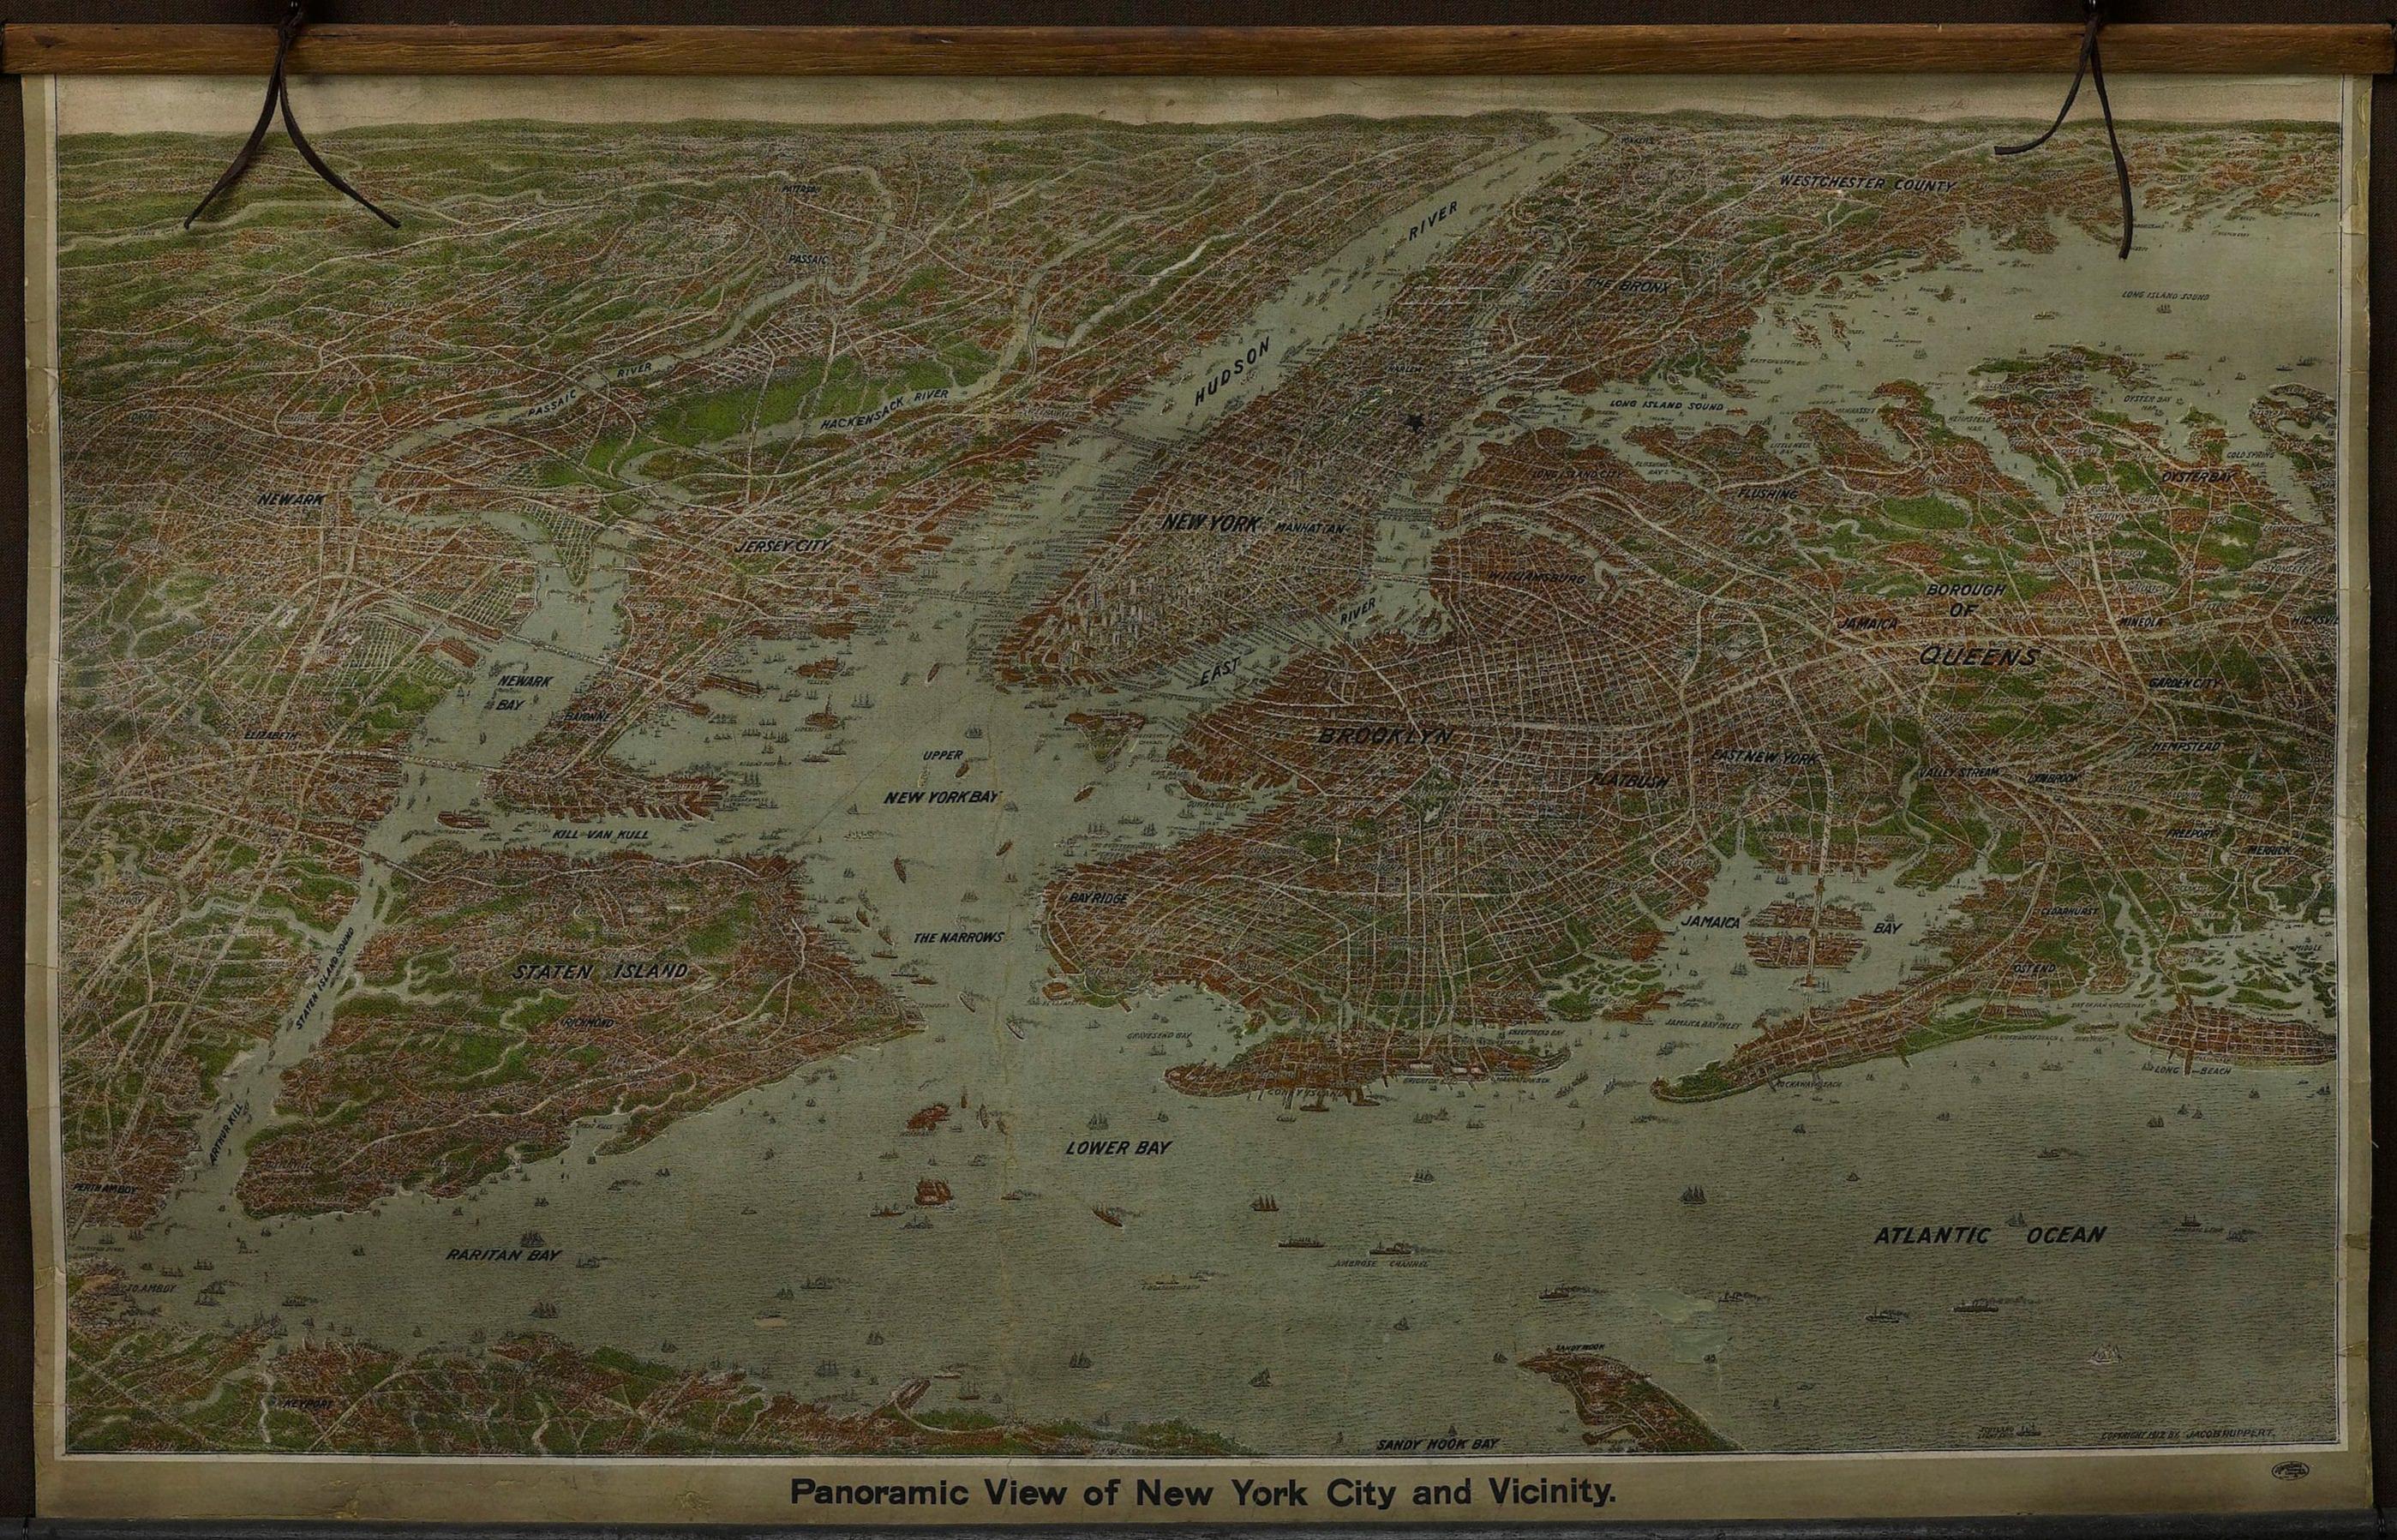 Dies ist eine attraktive und sehr seltene Karte von New York, herausgegeben von dem Yorkville-Brauer Jacob Ruppert im Jahr 1912. Die Karte zeigt einen weiten Blick auf die Region, die von Sandy Hook im Süden und Yonkers im Norden bis nach Hicksville